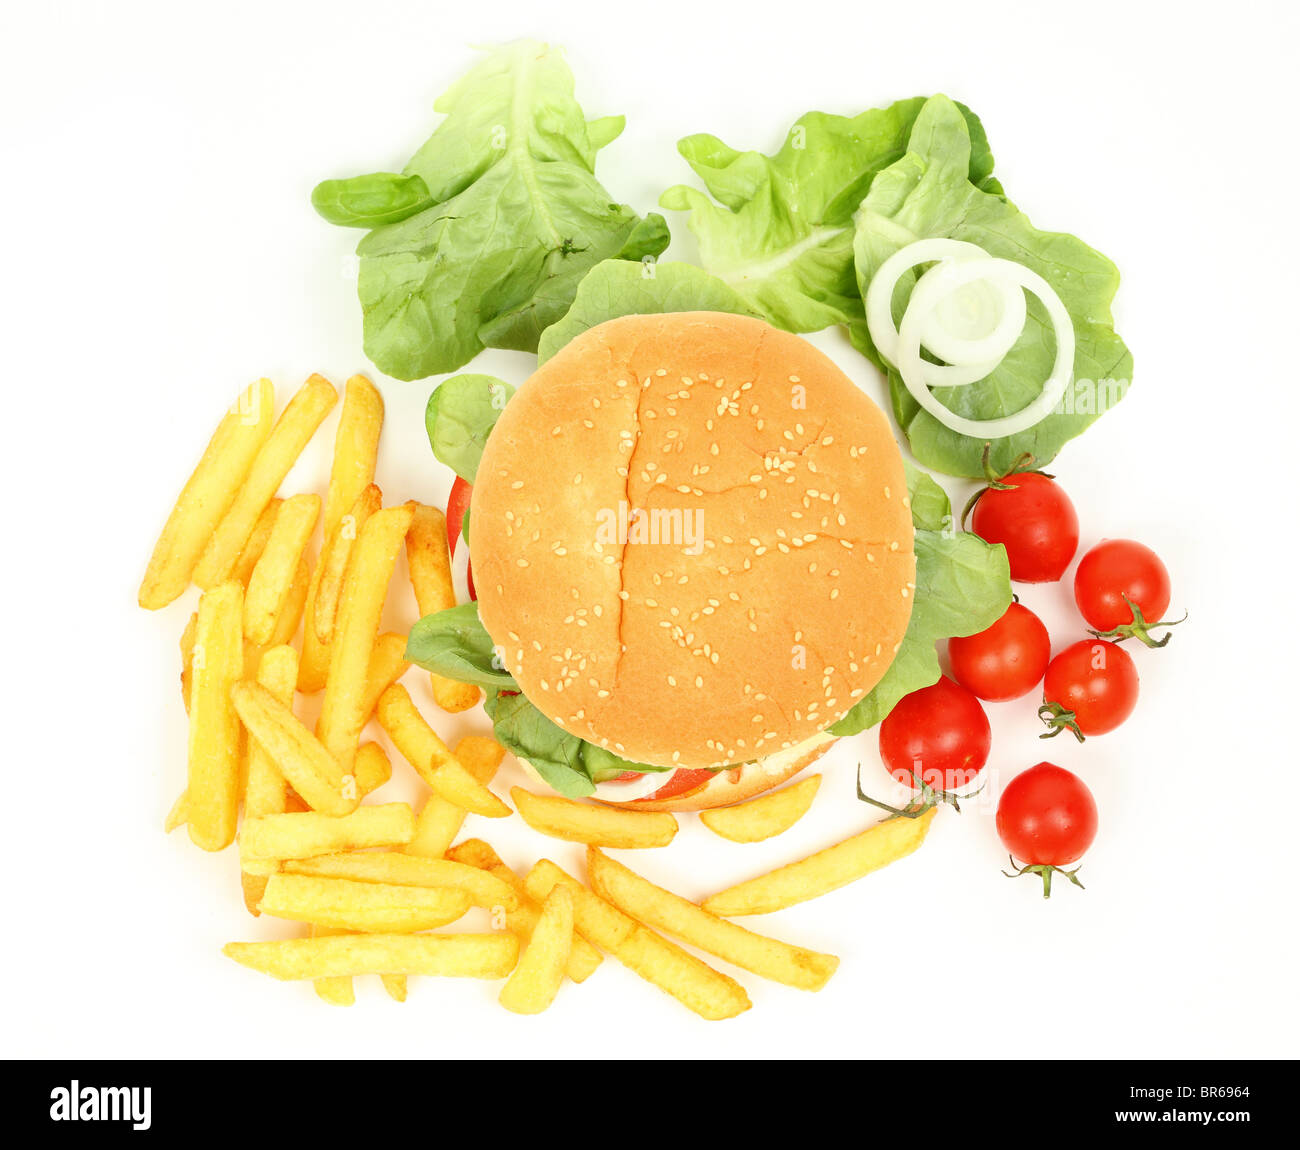 Primo piano di una fresca cheeseburger con patate fritte isolate su sfondo bianco Foto Stock